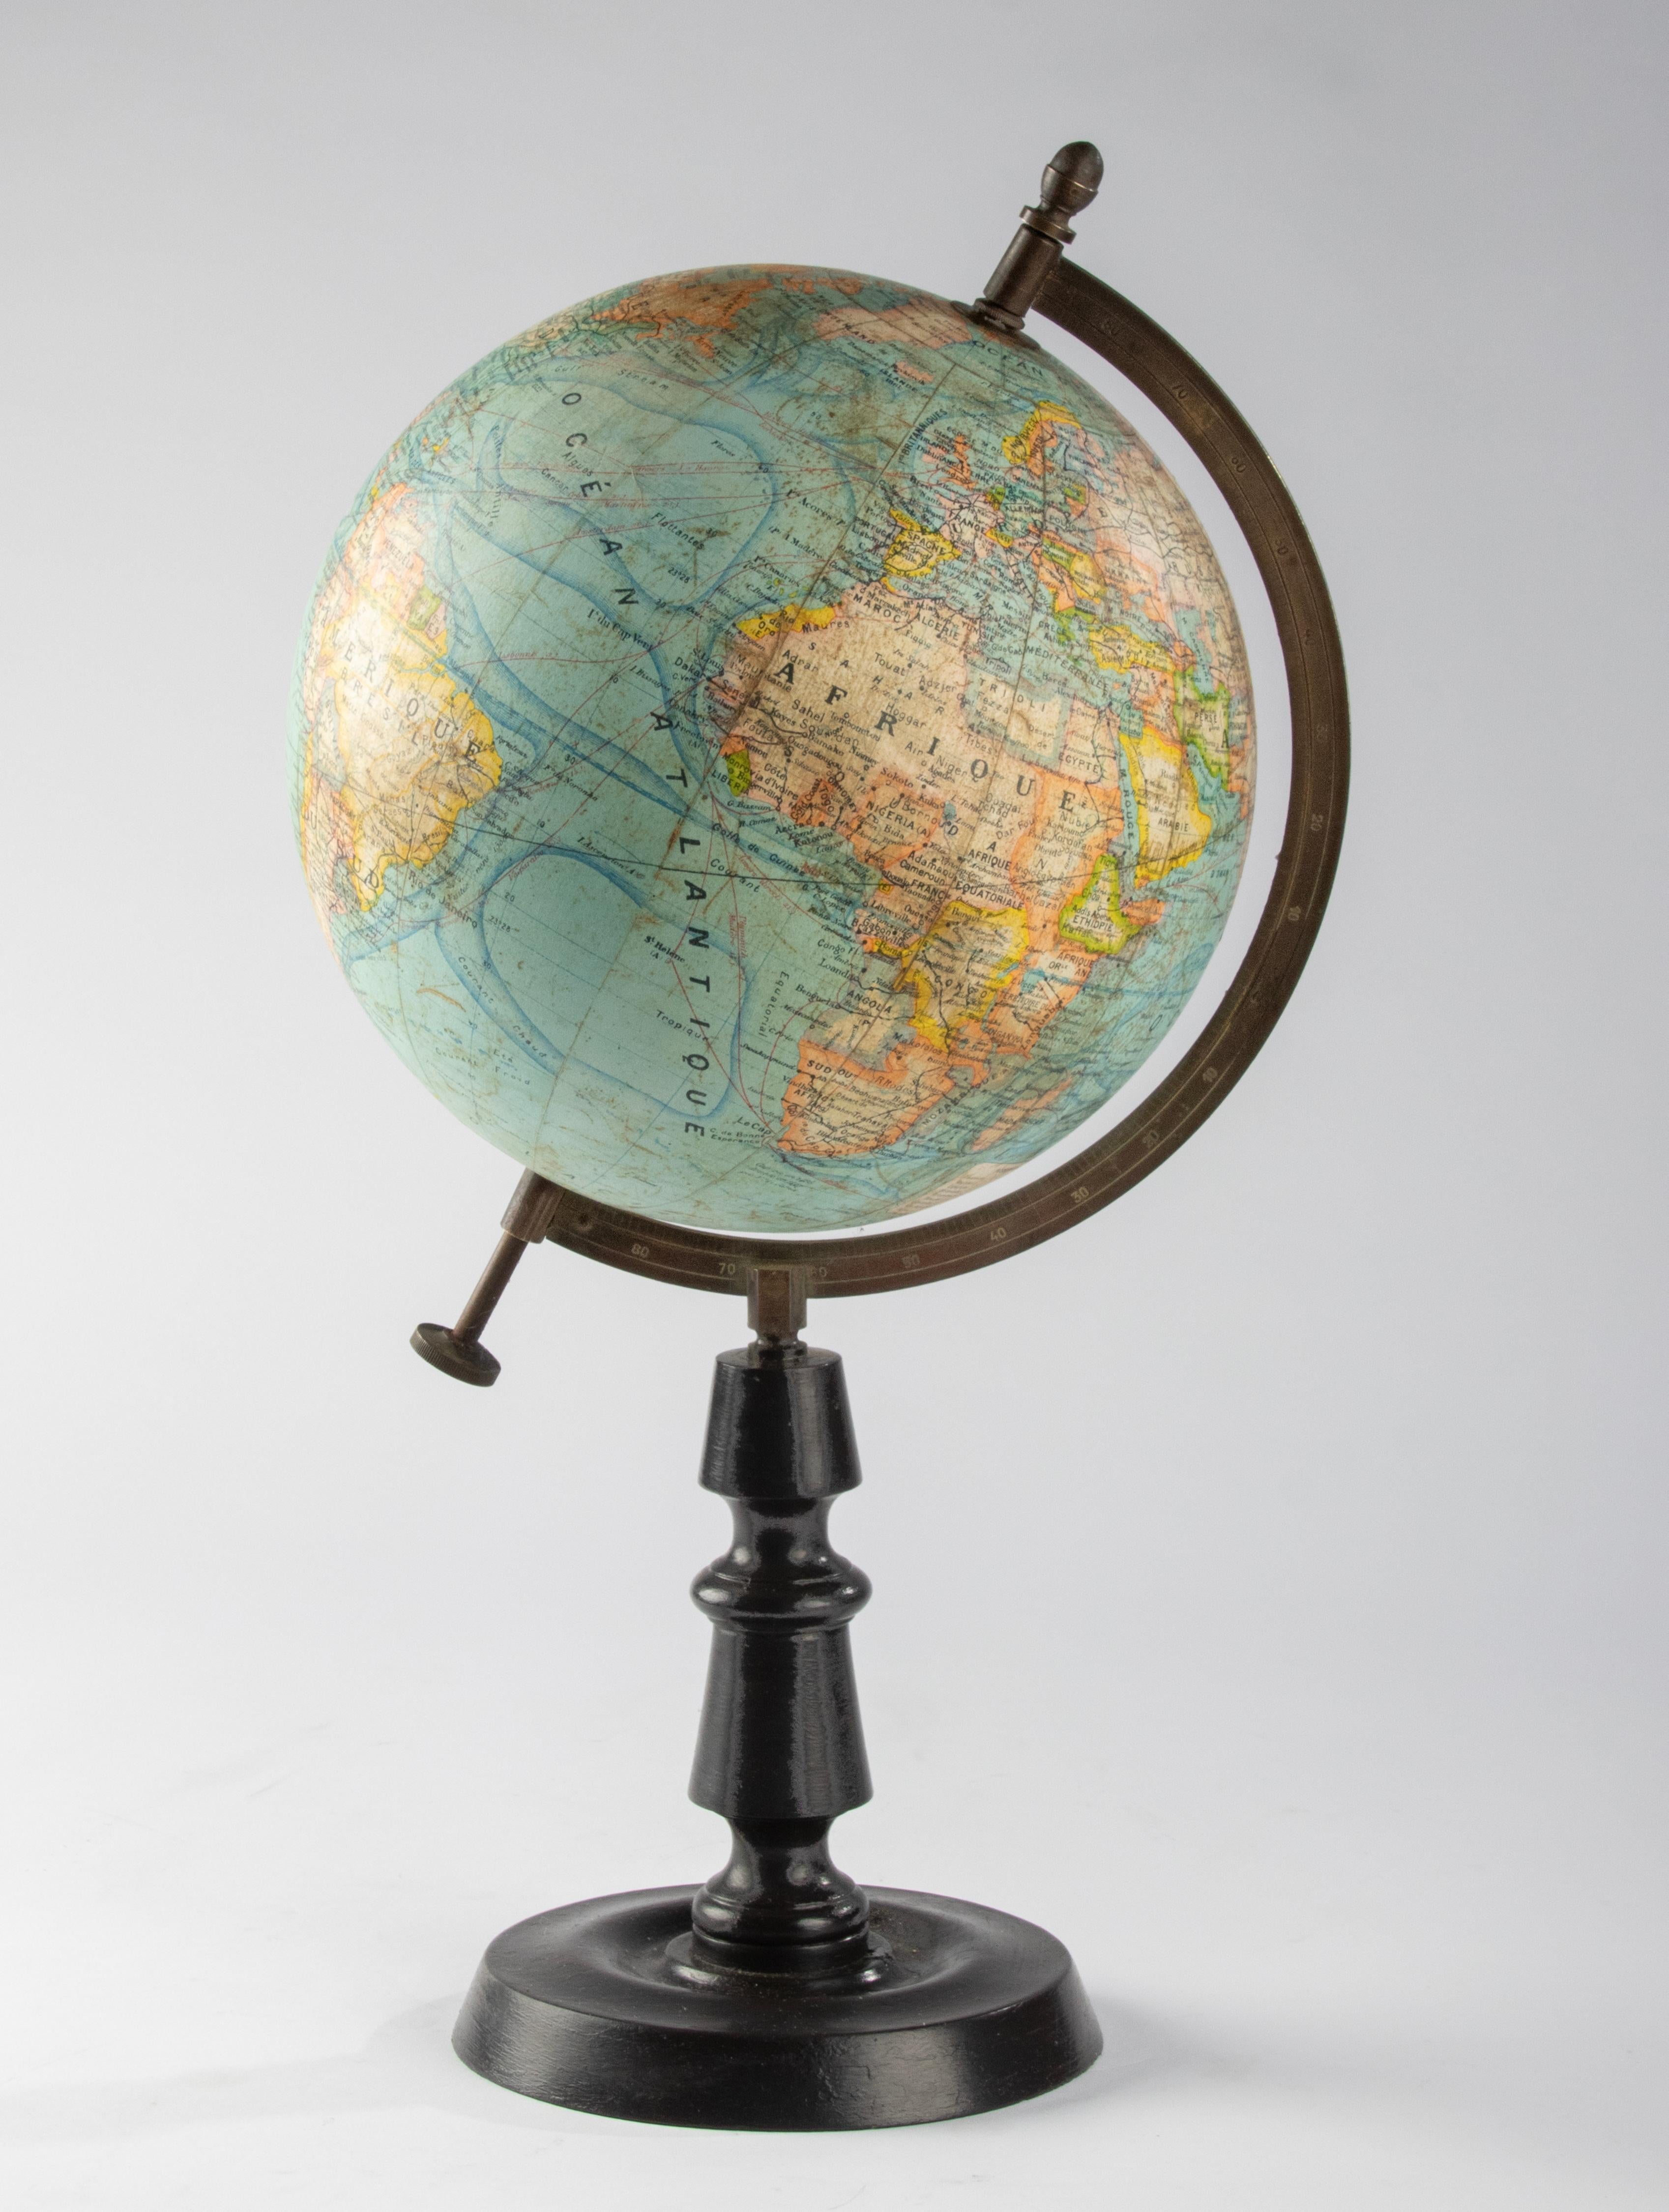 World Globe des späten 19. Jahrhunderts – herausgegeben von J. Forest Paris – Globe Terrestre 11